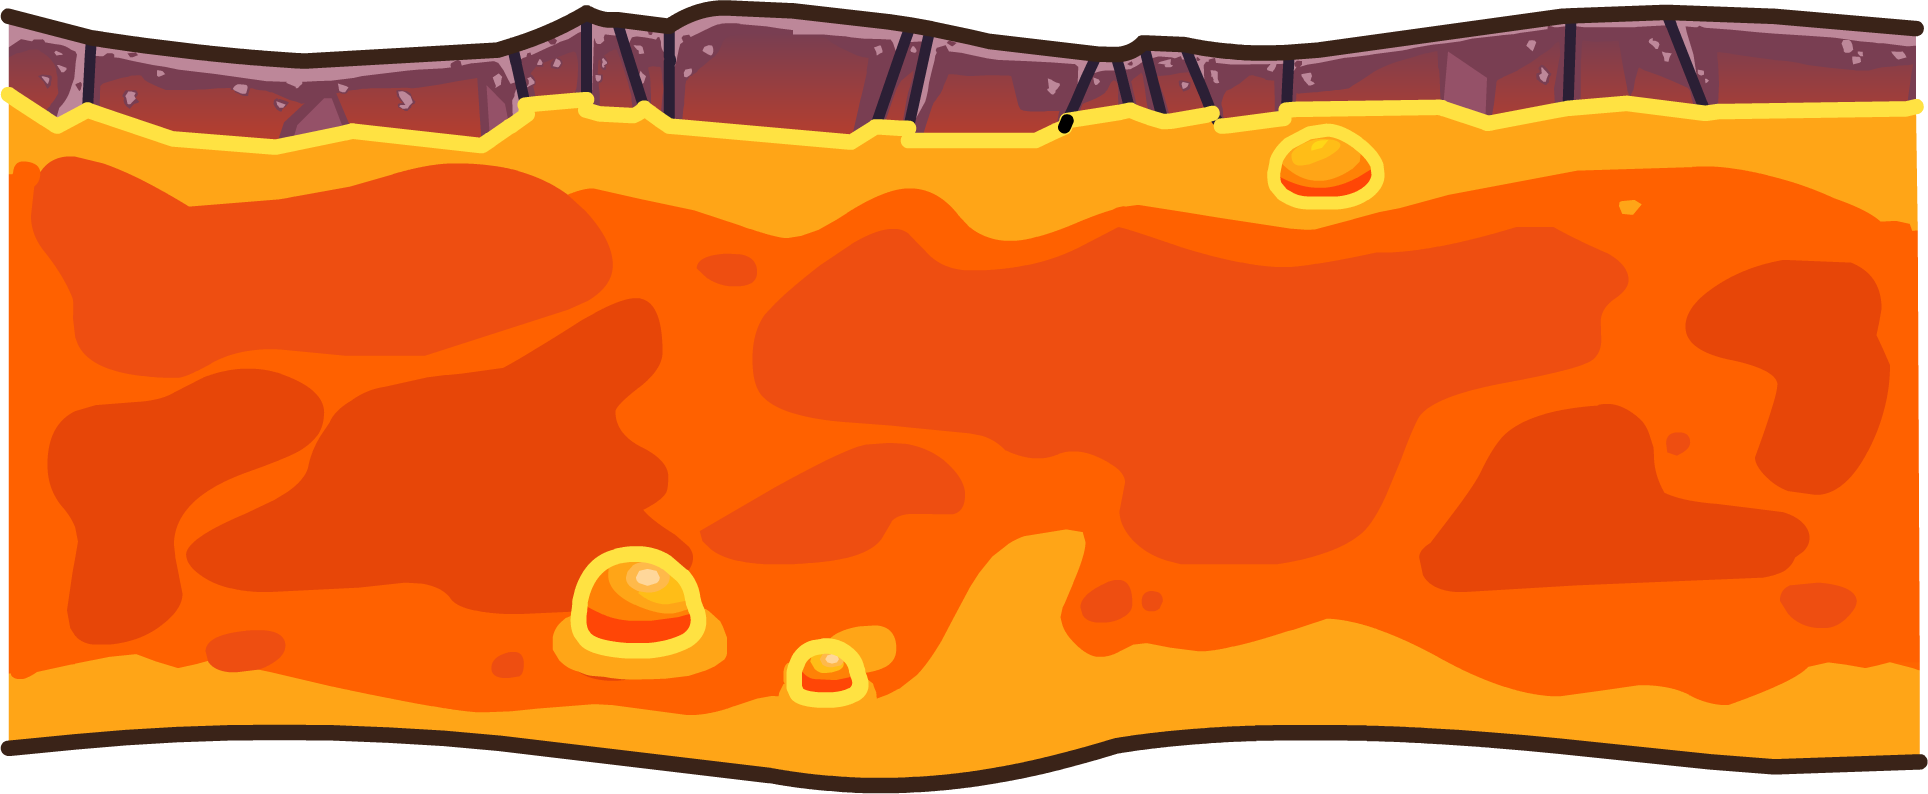 Lava Flow | Club Penguin Wiki | Fandom